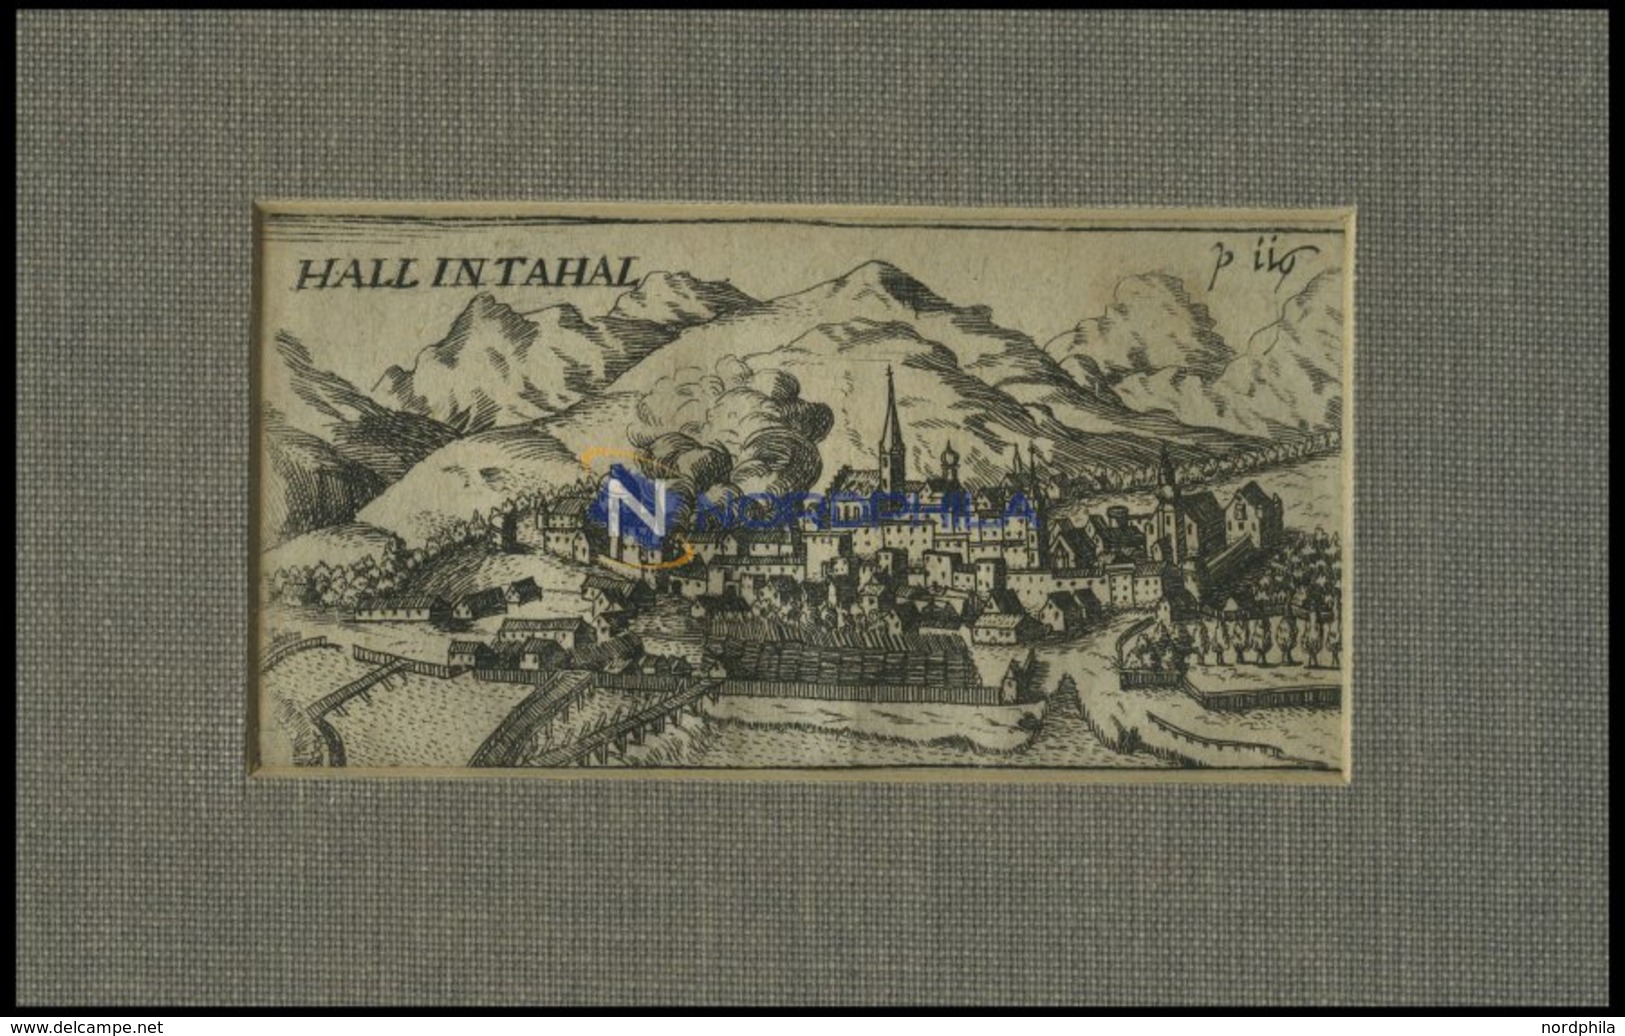 HALL, Gesamtansicht, Kupferstich Von Hoffmann Von 1685 - Litografía